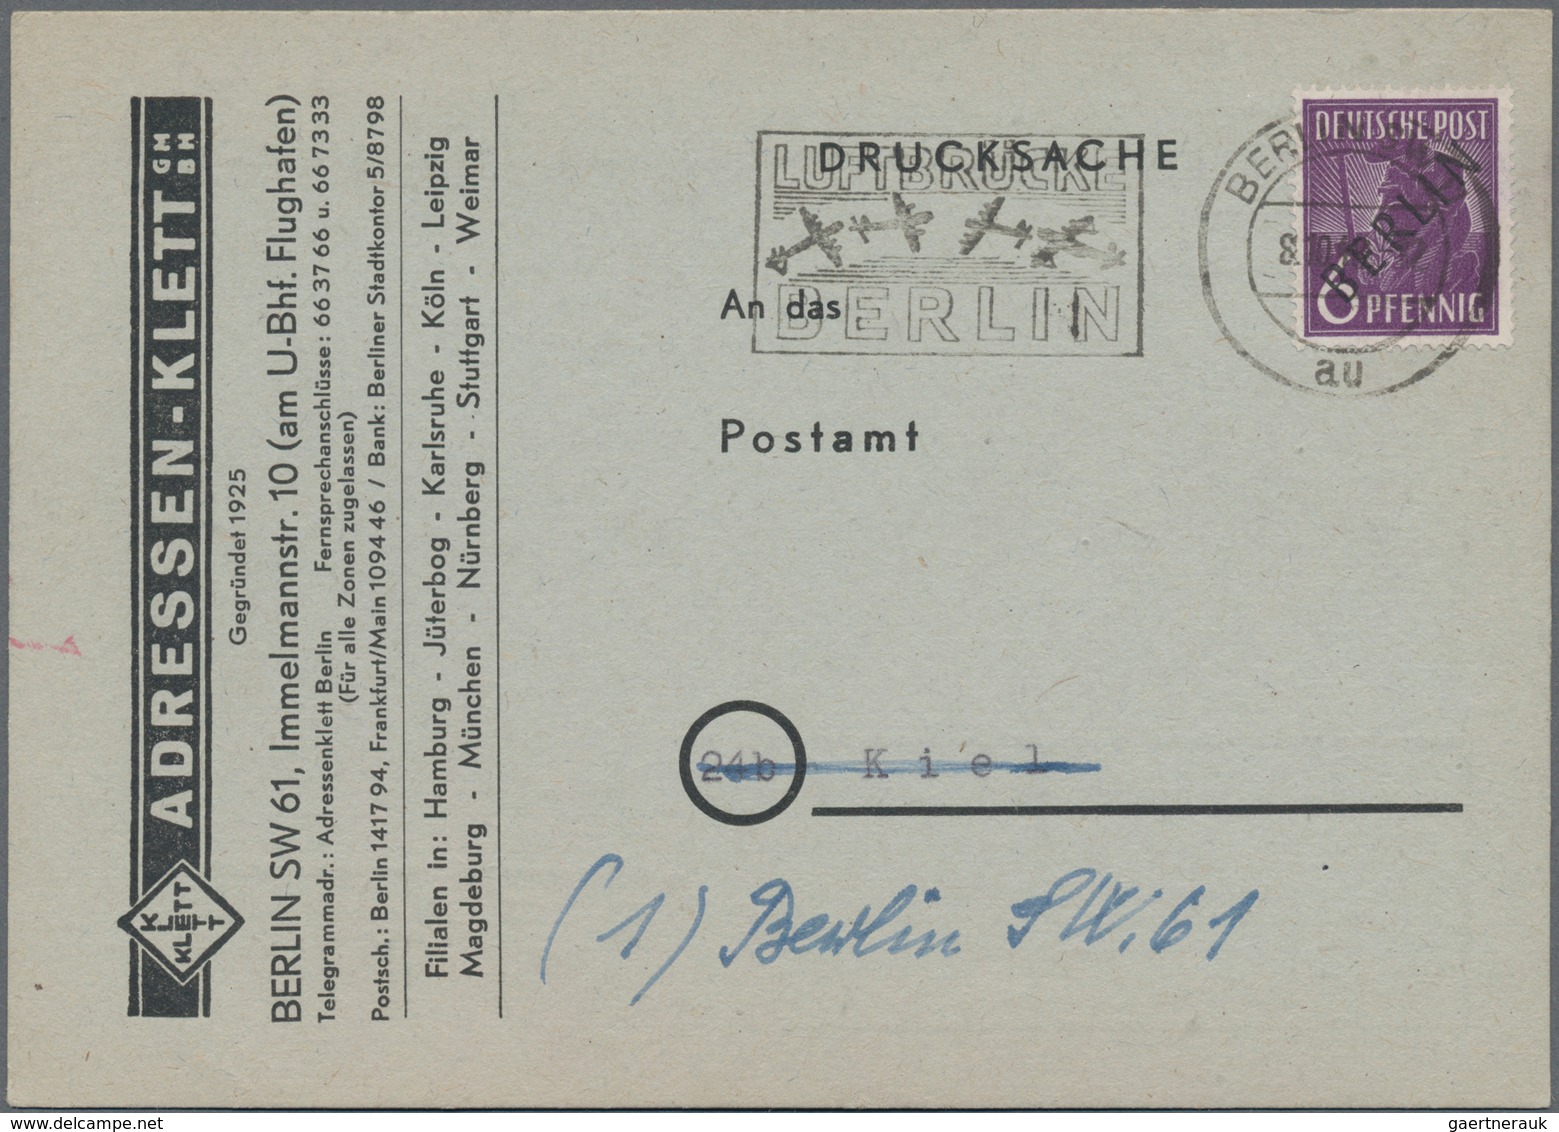 Berlin: 1948, 6 Pf. Schwarzaufdruck Mit Masch.Stpl. BERLIN SW 61 / 8.10.48 Auf Vorgedruckter Anschri - Briefe U. Dokumente